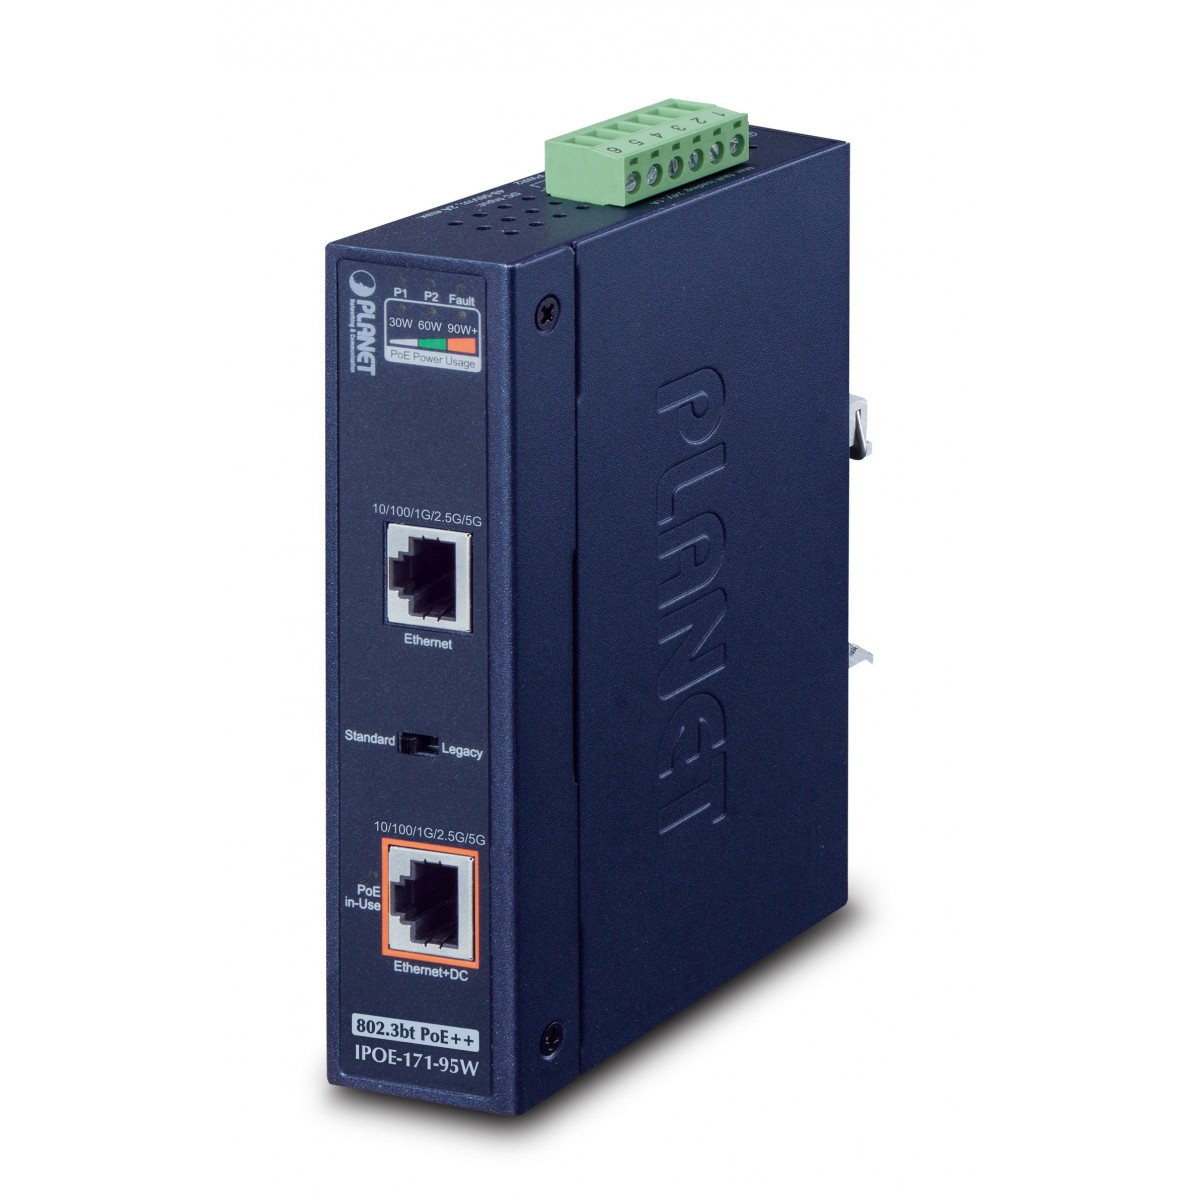 Planet IPOE-171-95W - Gigabit Ethernet (10/100/1000) - Power over Ethernet (PoE) - Wall mountable